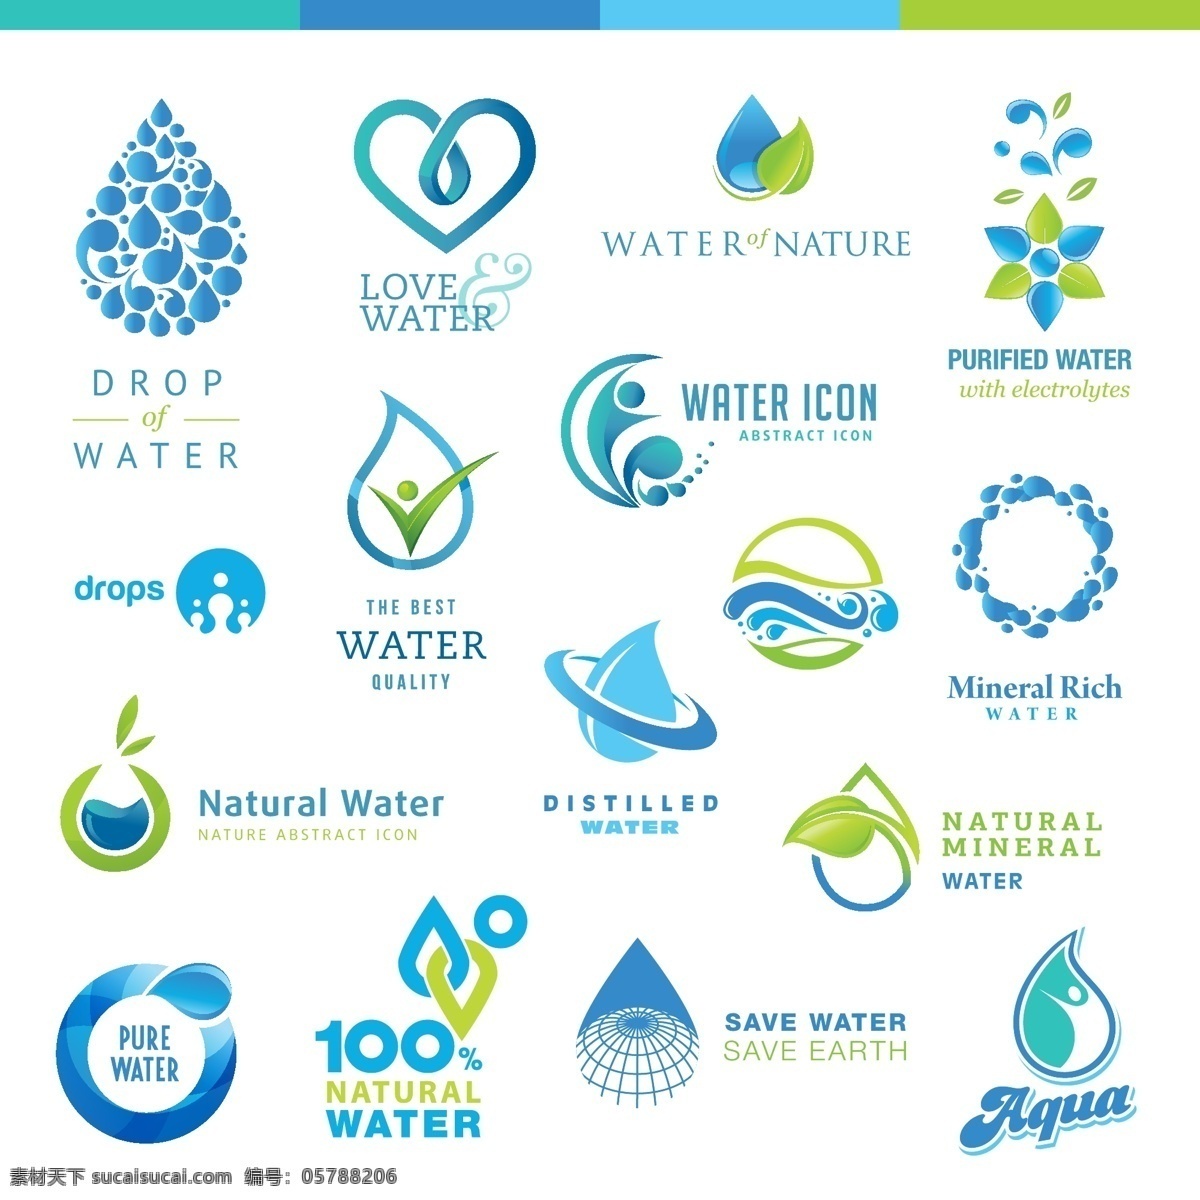 水资源 水图标 水滴 水珠 水 节约用水 淡水 纯净水 饮用水 其他图标 标志图标